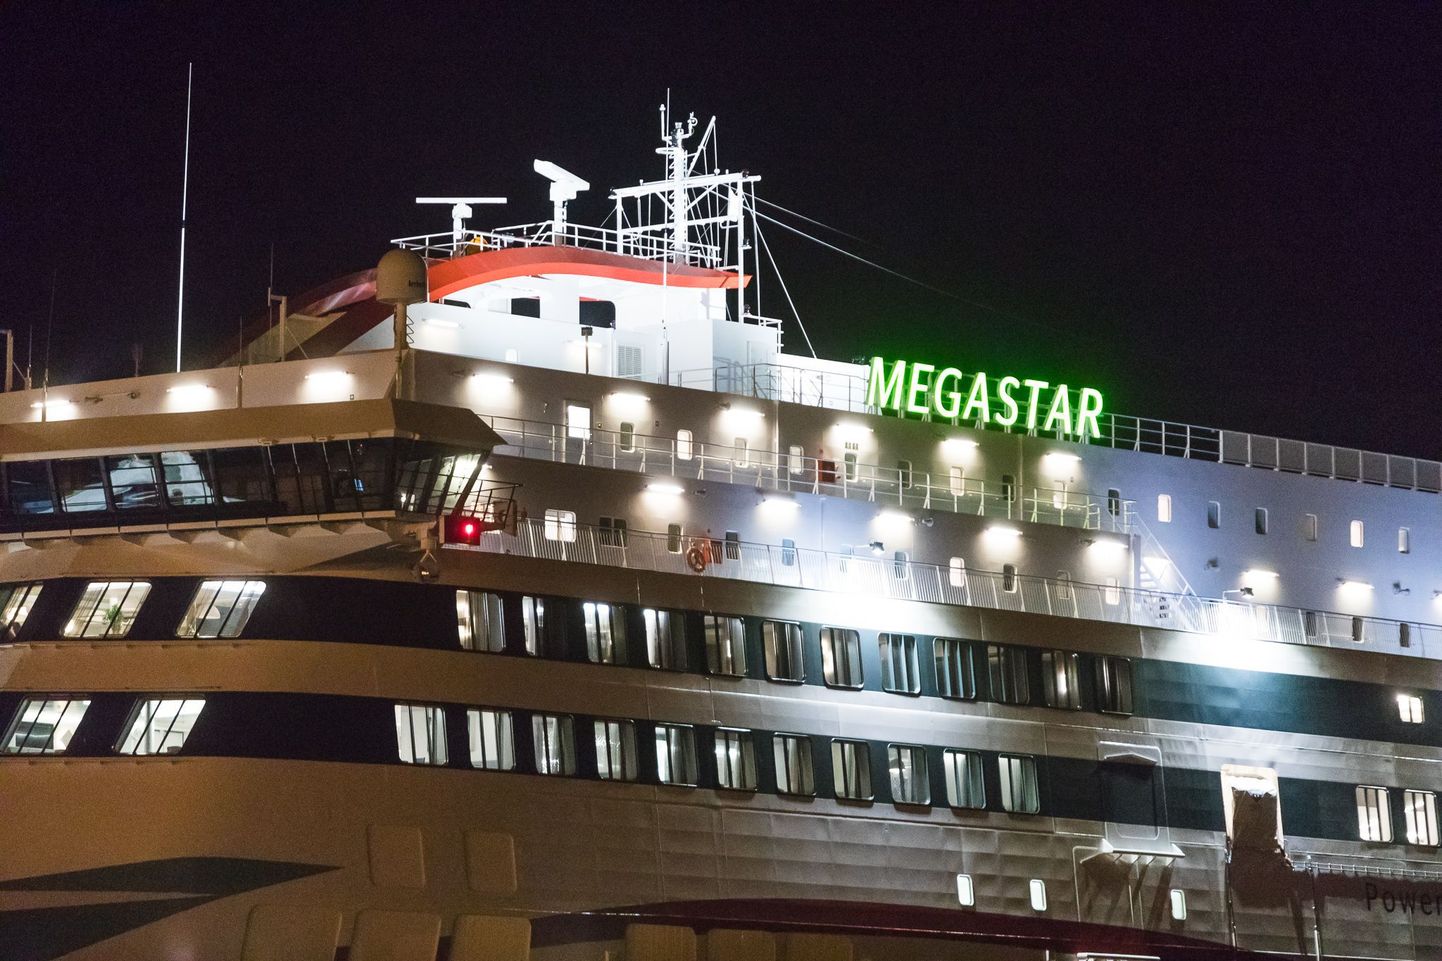 Tallinki laev Megastar.